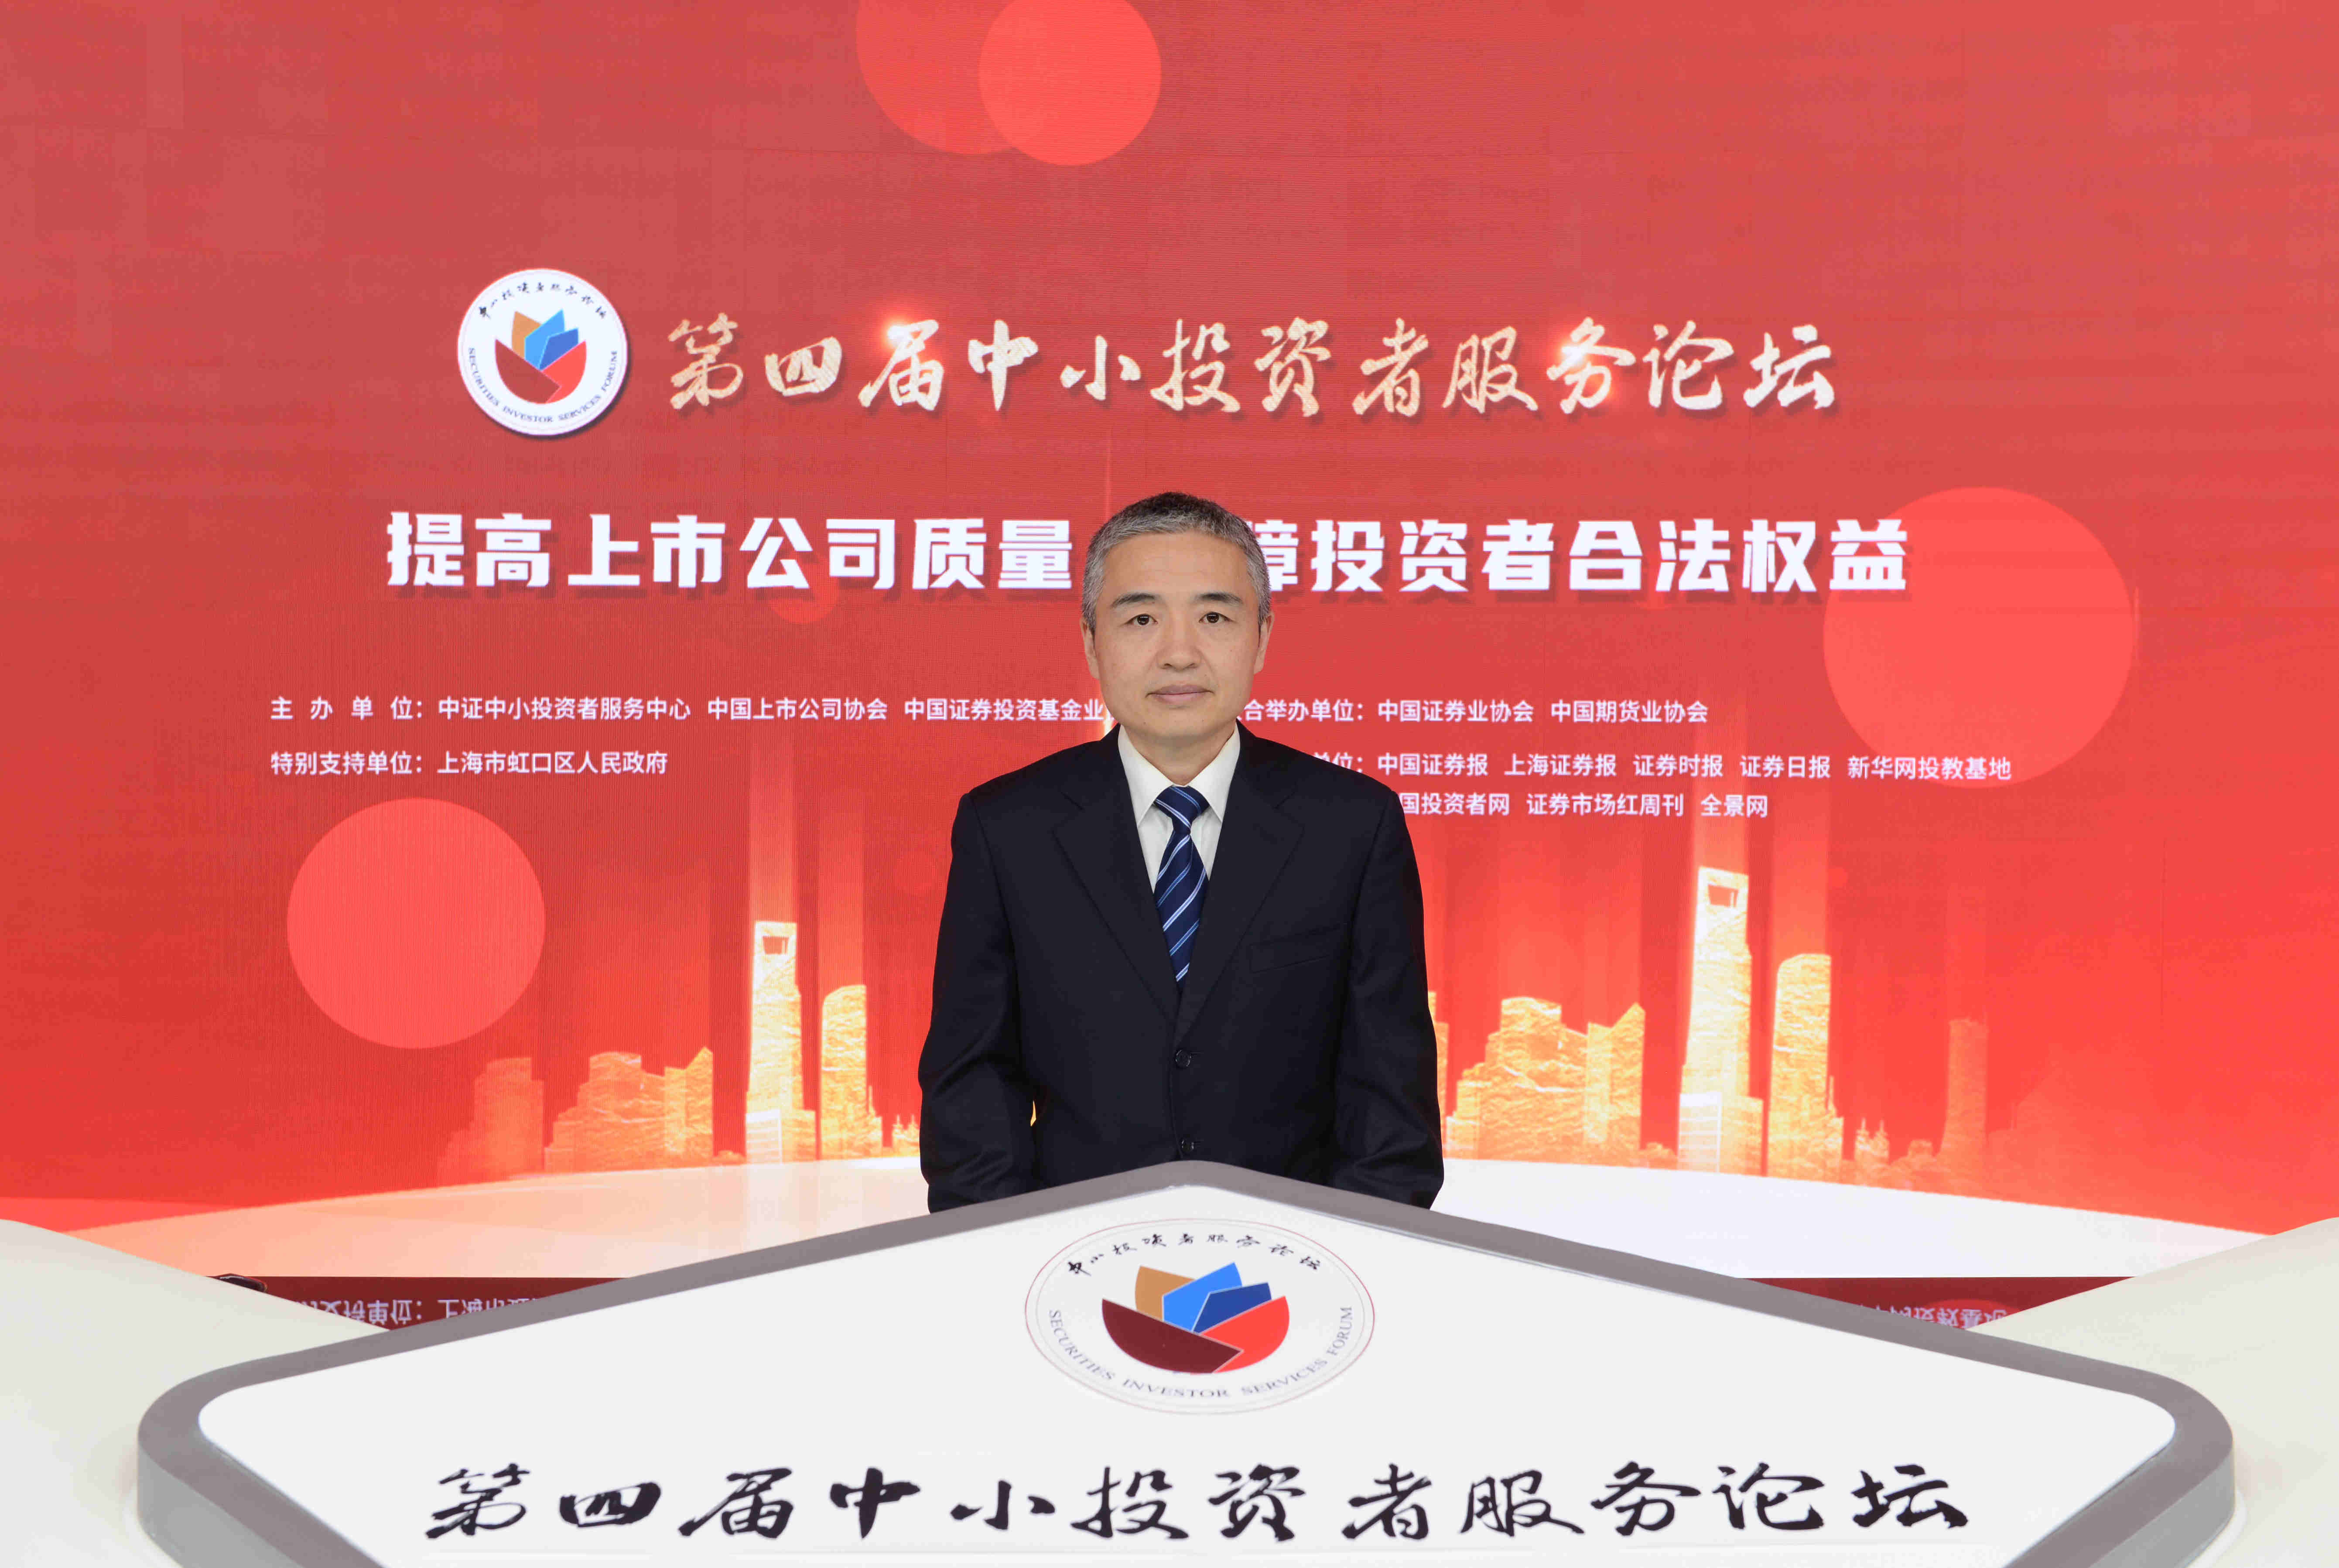 中国期货业协会秘书长吴亚军在第四届中小投资者服务论坛上的发言